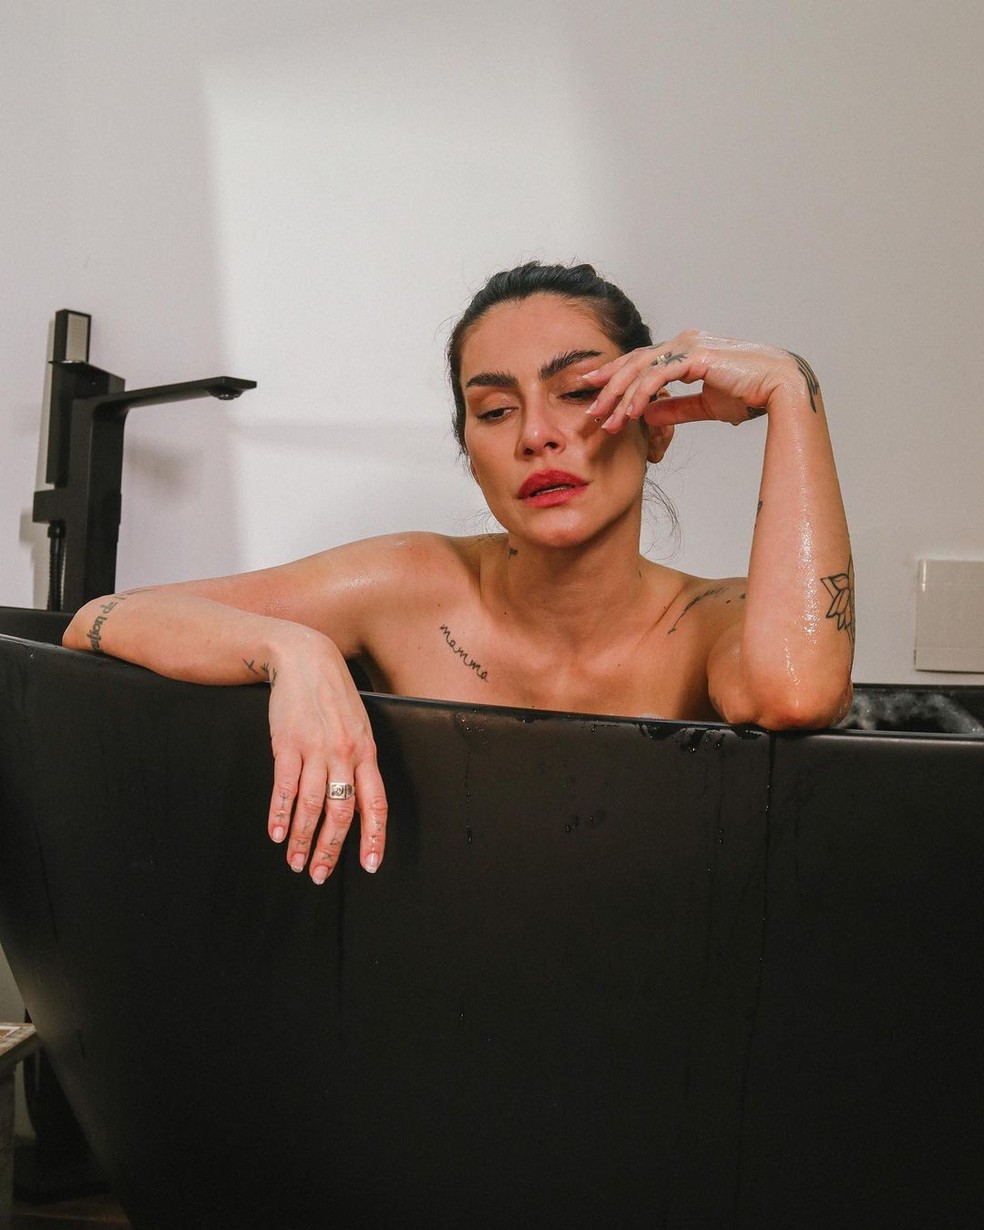 Cleo exibe sensualidade ao posar na banheira   — Foto:  Reprodução/Instagram